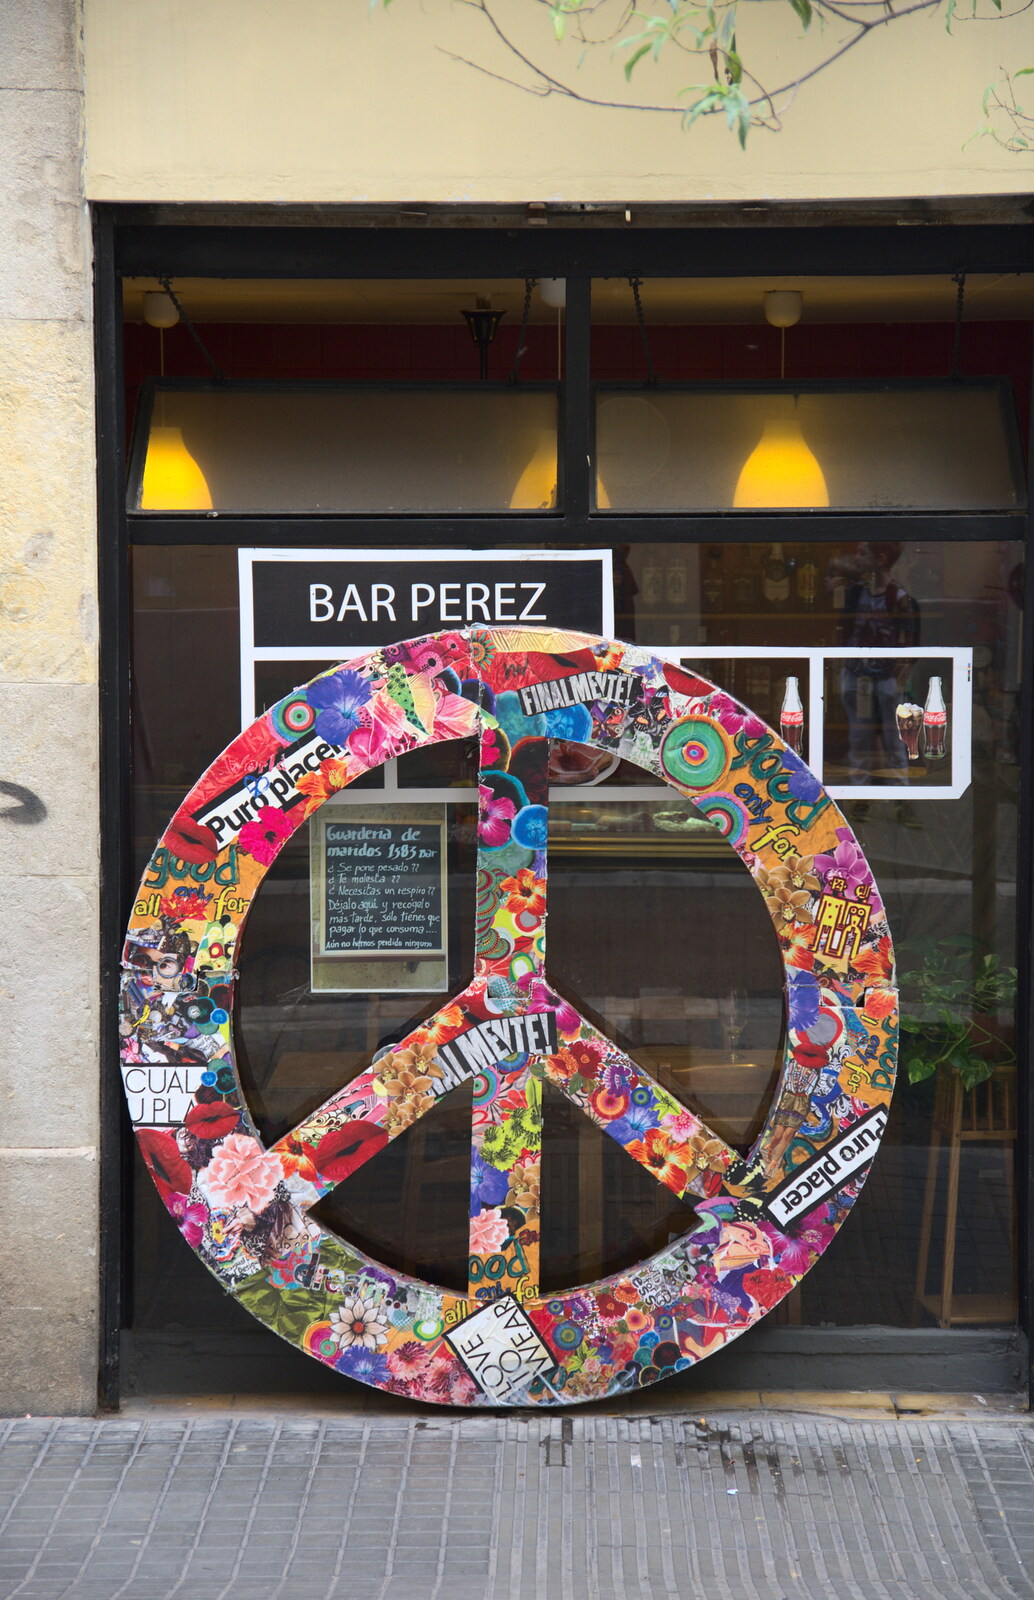 A CND symbol/peace sign from L'Aquarium de Barcelona, Port Vell, Catalonia, Spain - 23rd October 2017